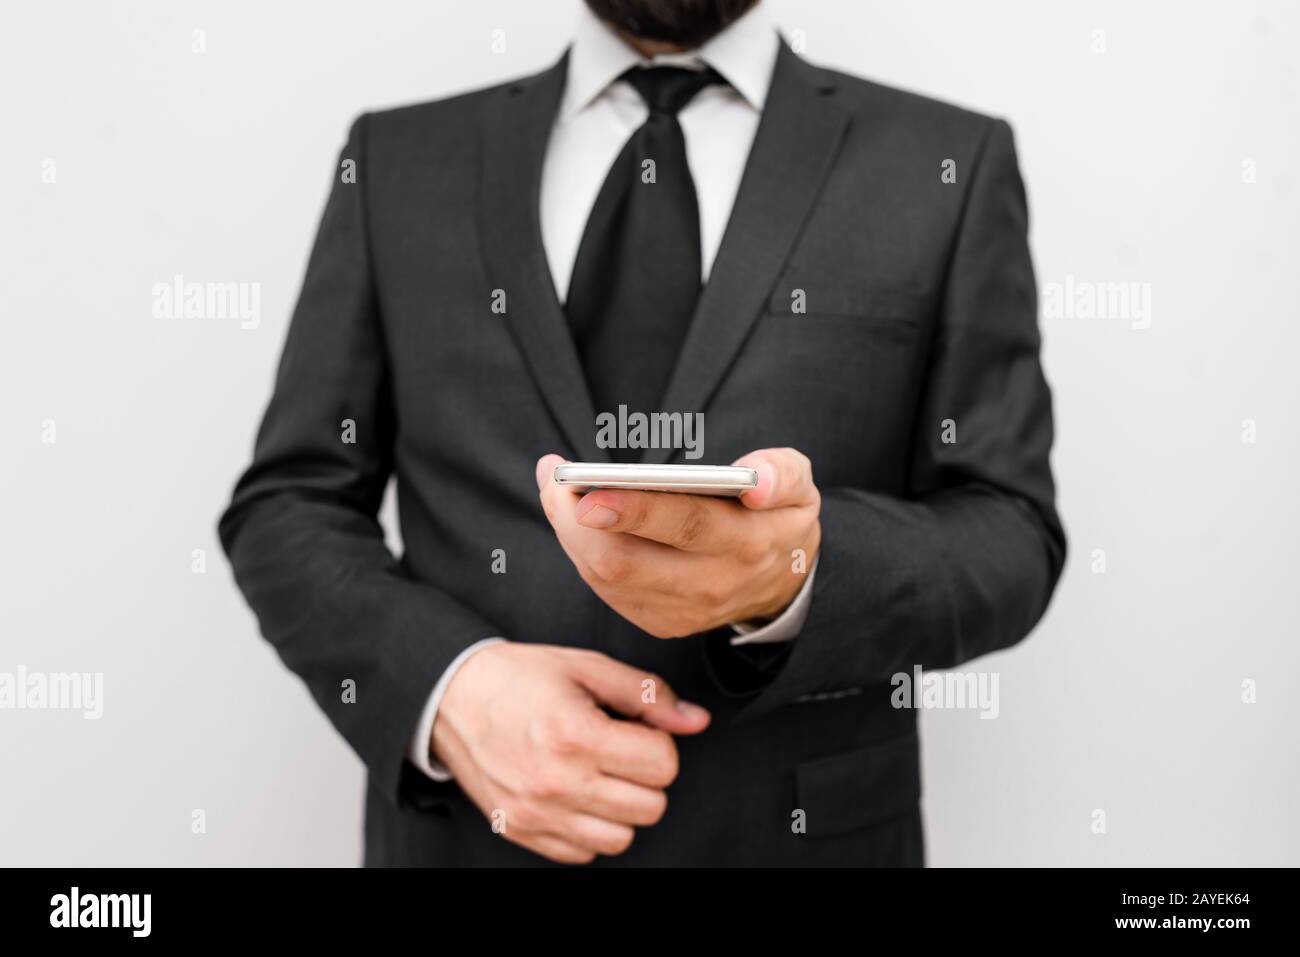 Homme avec barbe porter des vêtements de travail formels tenir l'appareil de smartphone haute technologie. Homme vêtu d'un costume de travail et d'une tenue de cravate Banque D'Images